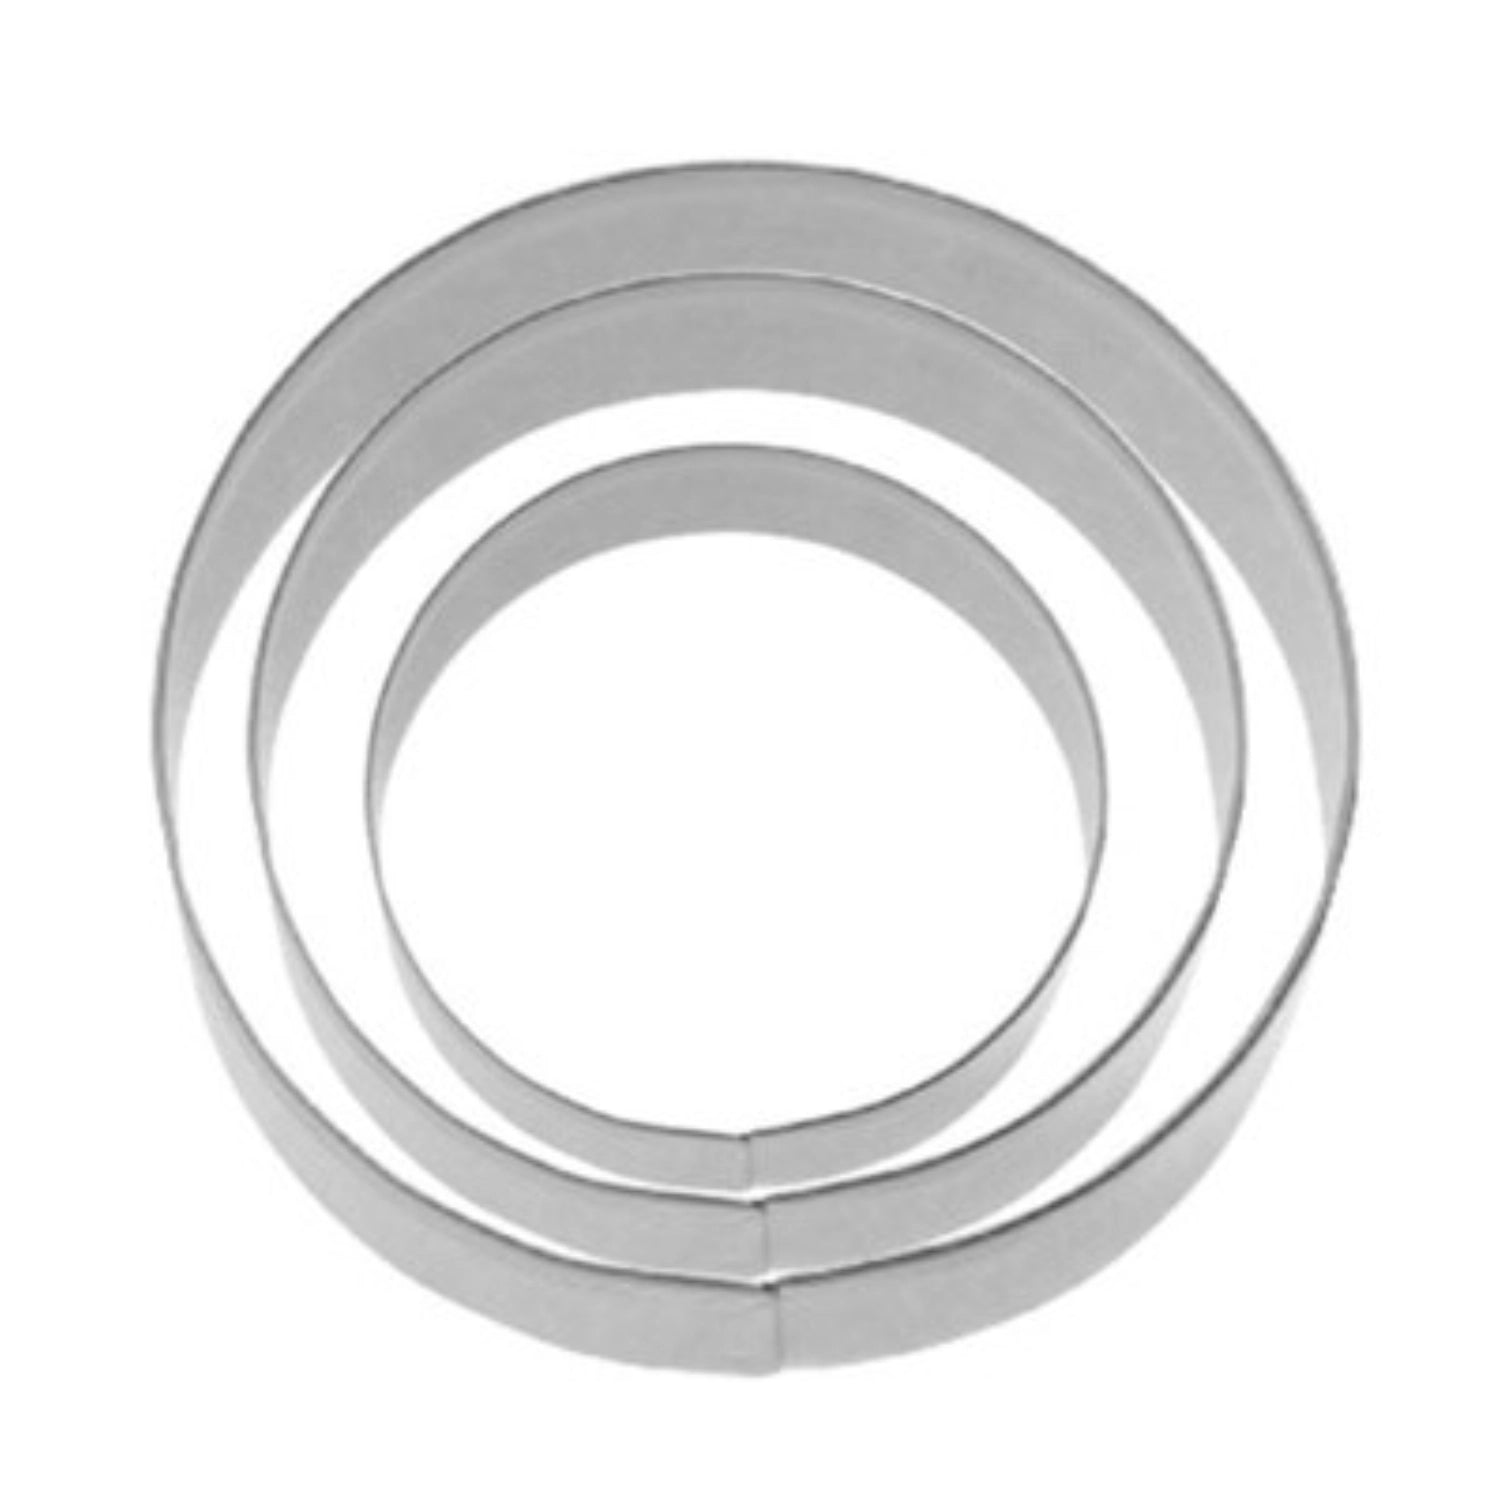 3 Stk. Terrassen-Ausstechformen Ring glatt, D4,5,6cm - KAQTU Design